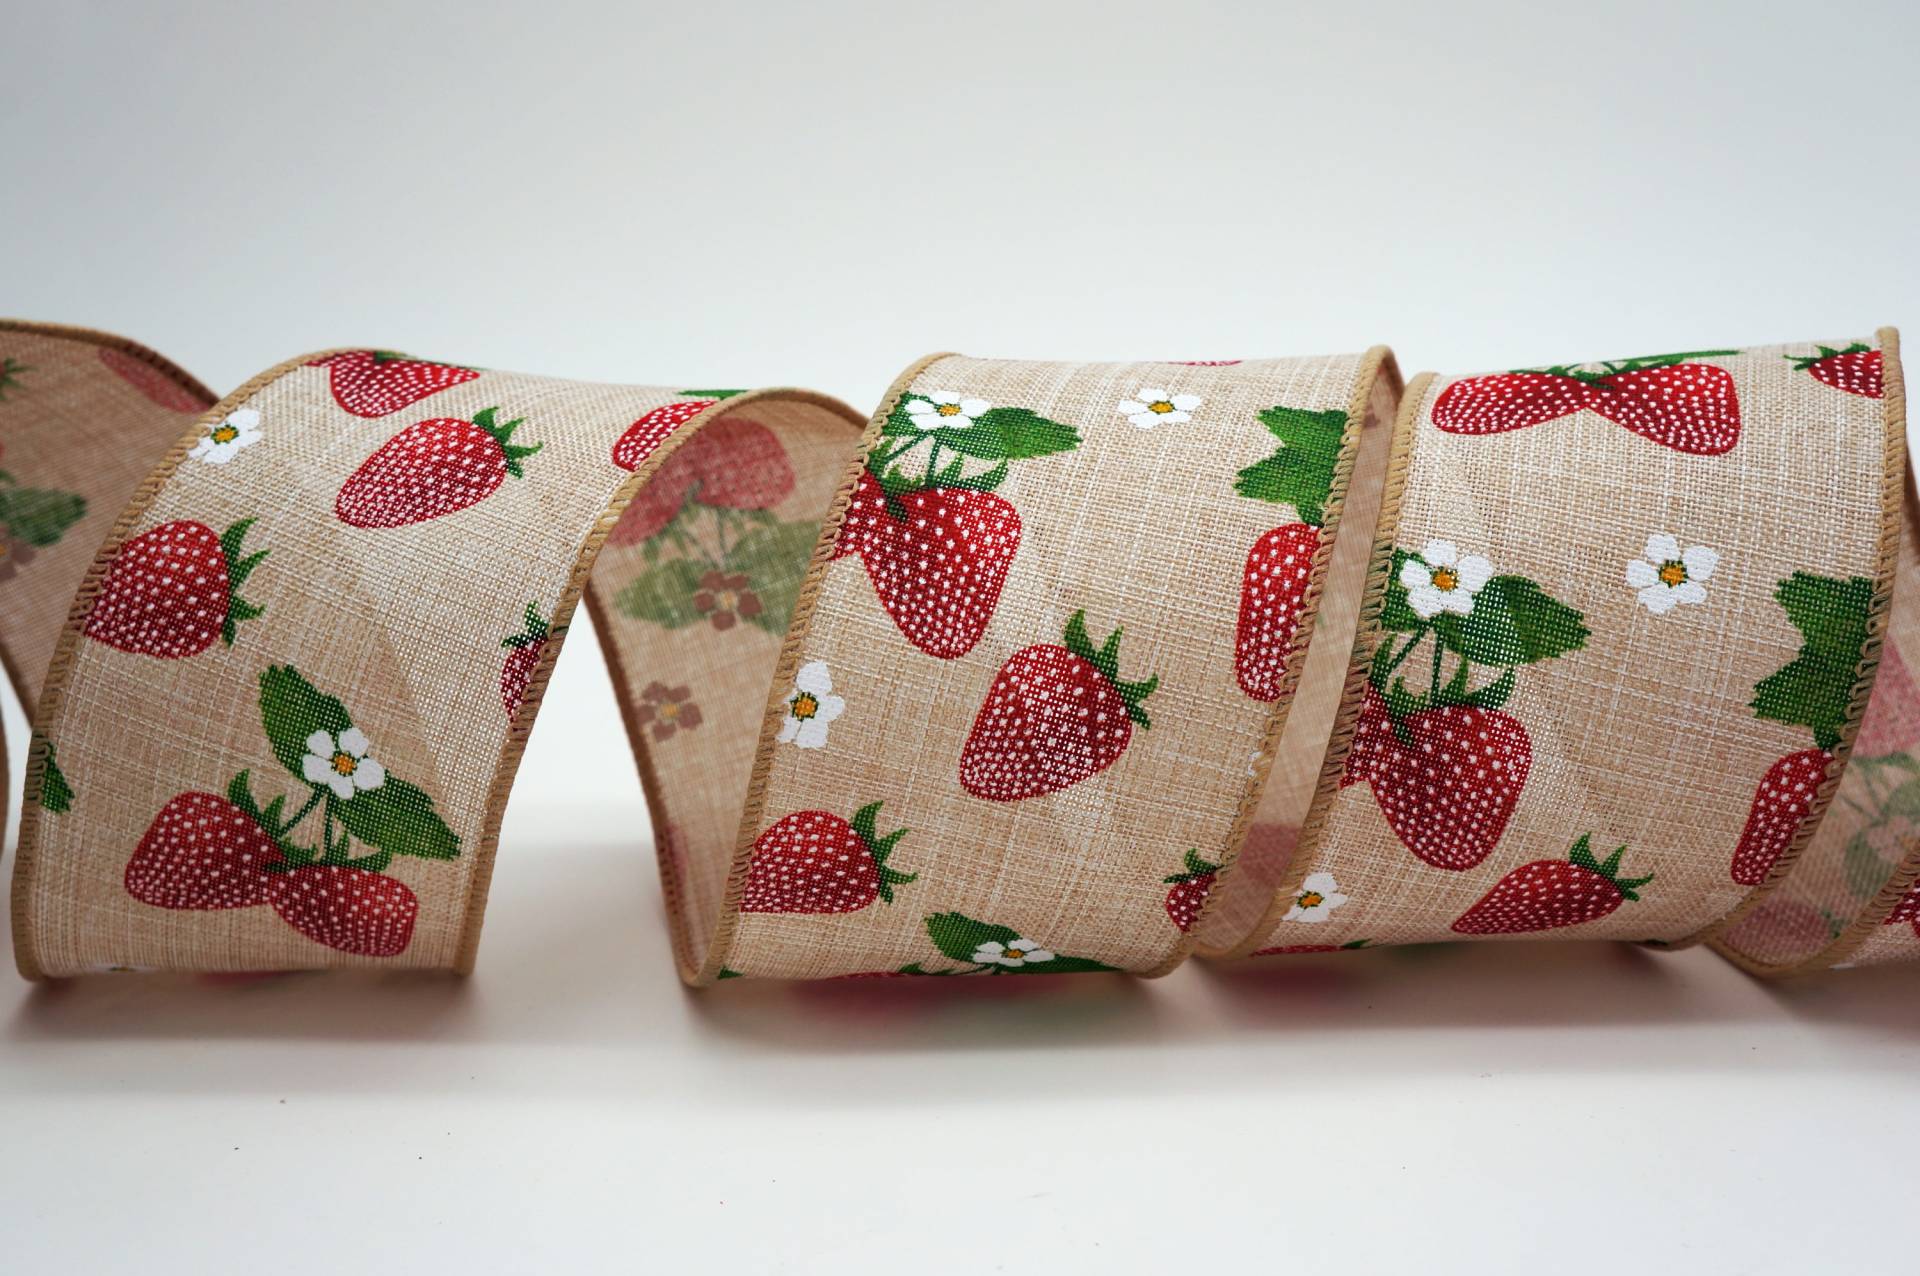 Strawberries Ribbon, Holiday Ribbons